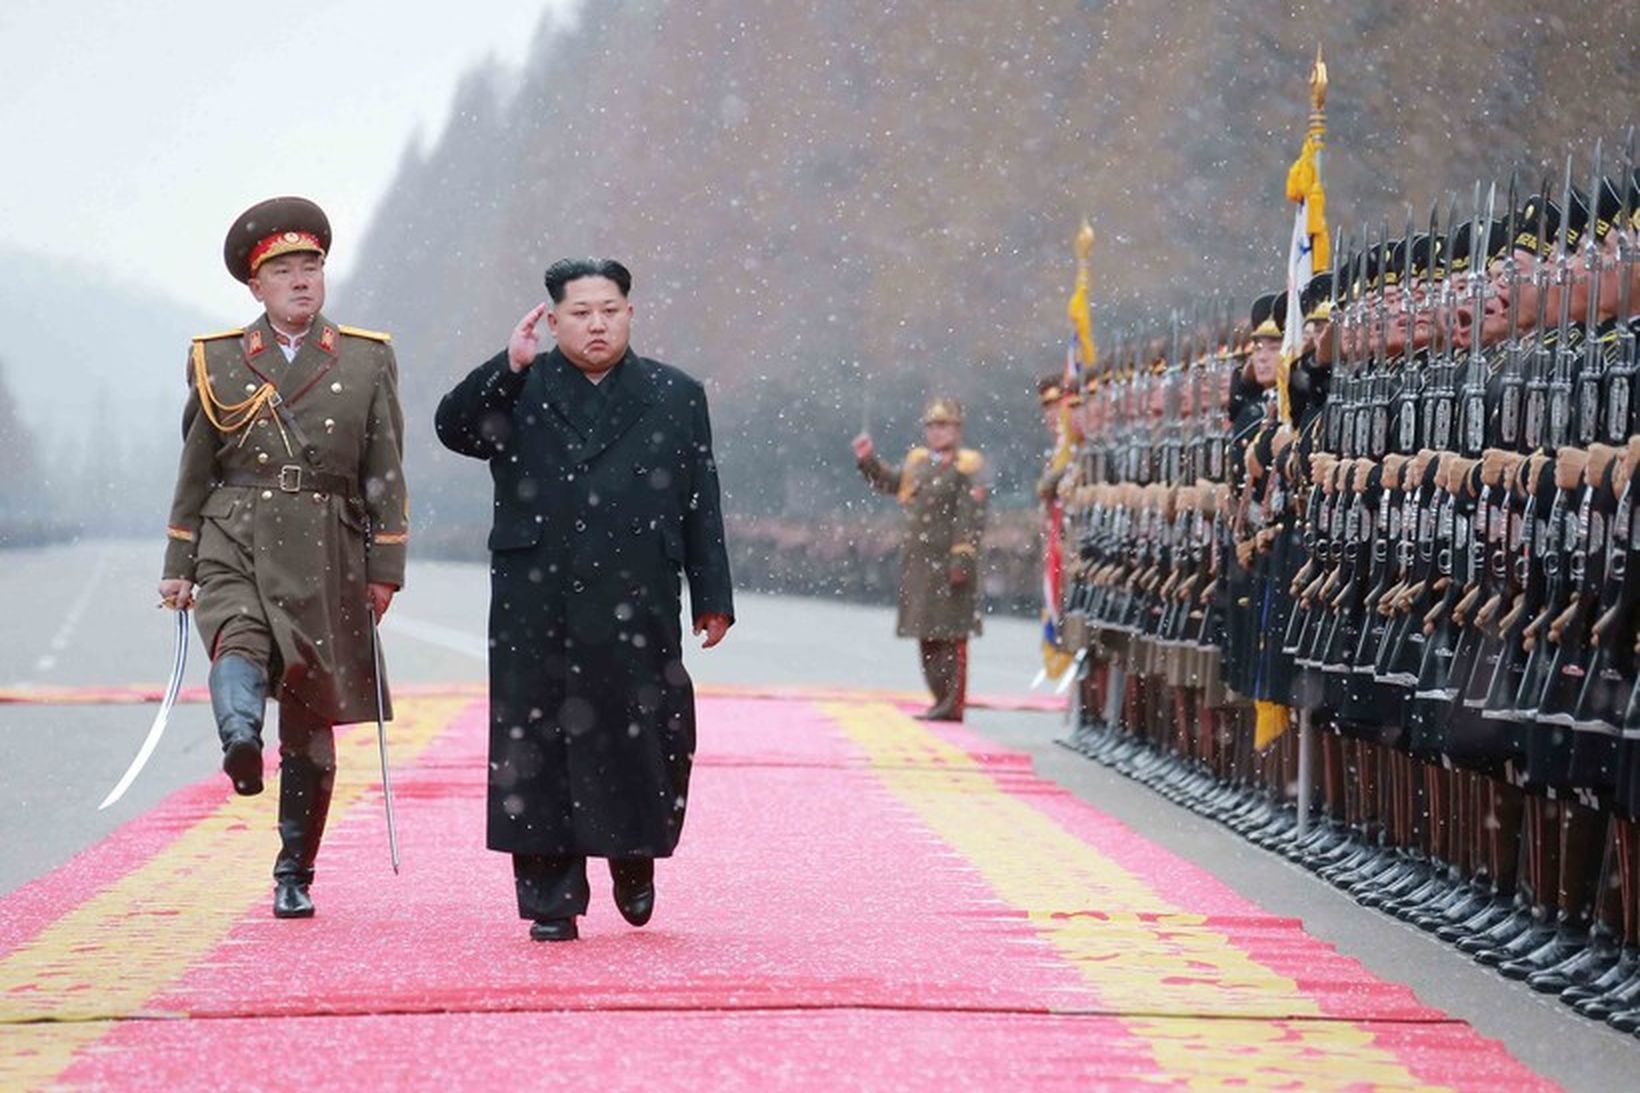 Leiðtogi Norður Kóreu, Kim Jong-Un, heilsar hermönnum í Pyongyang. Mynd …